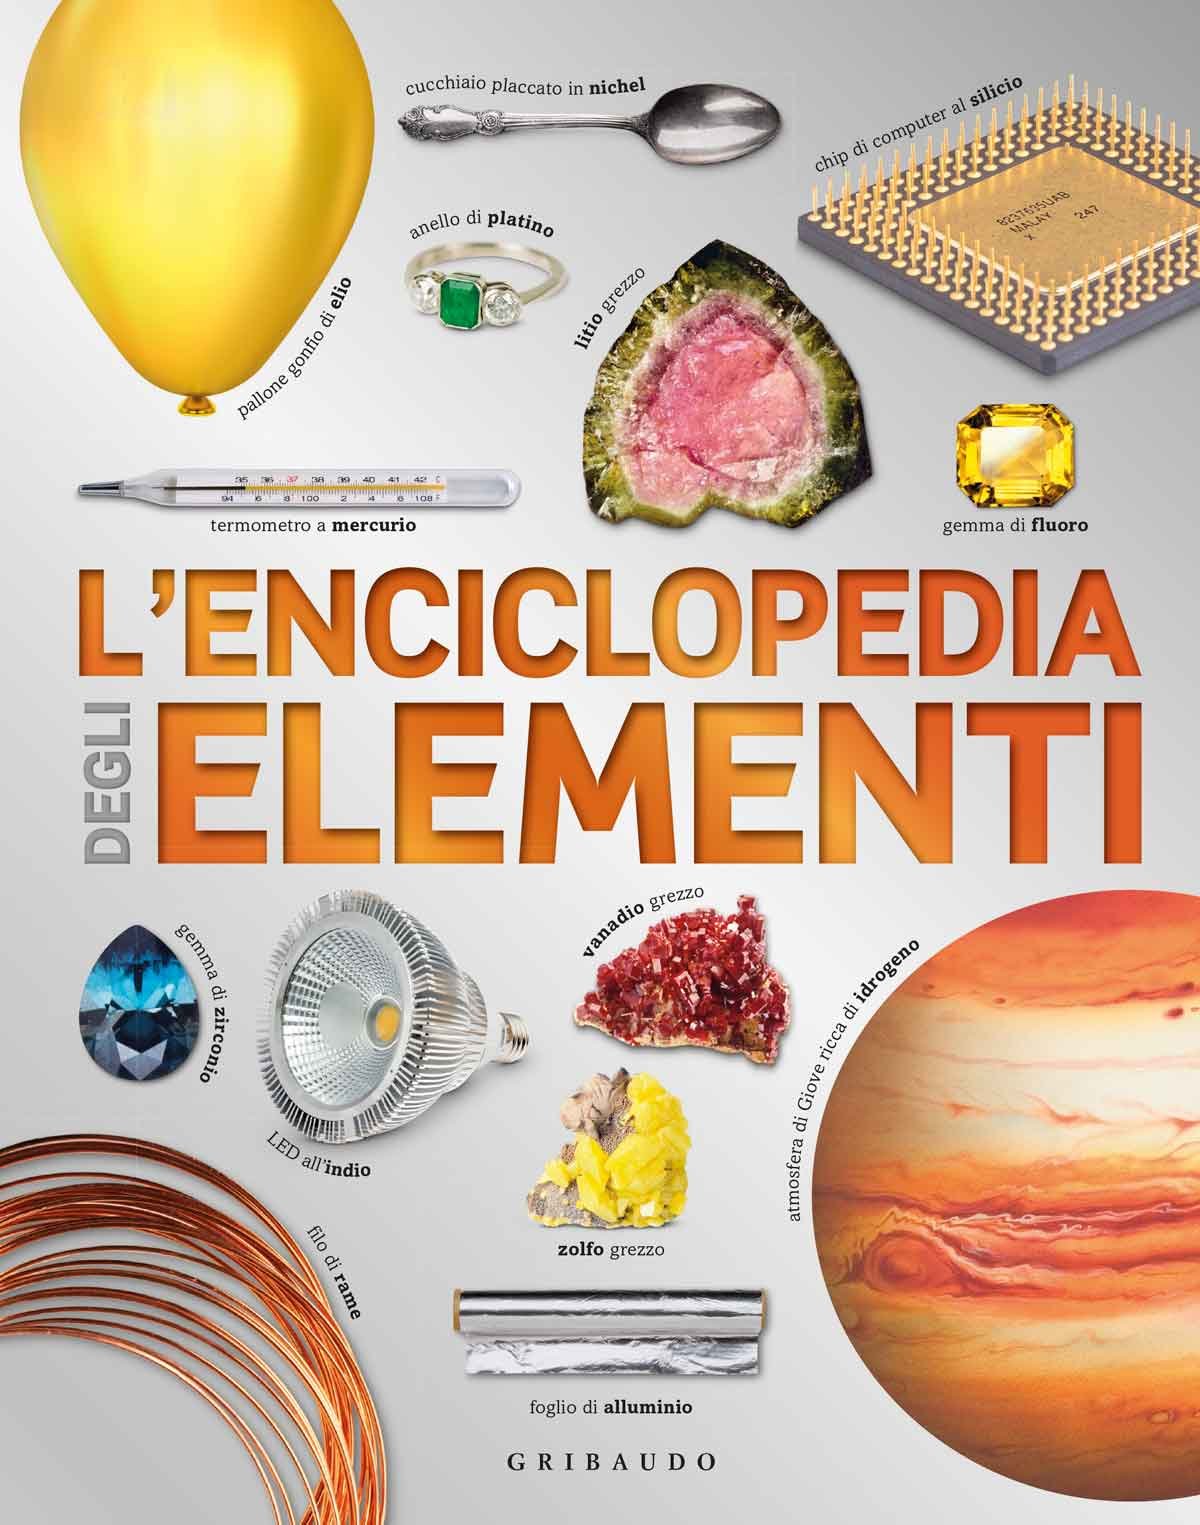 L'enciclopedia degli elementi